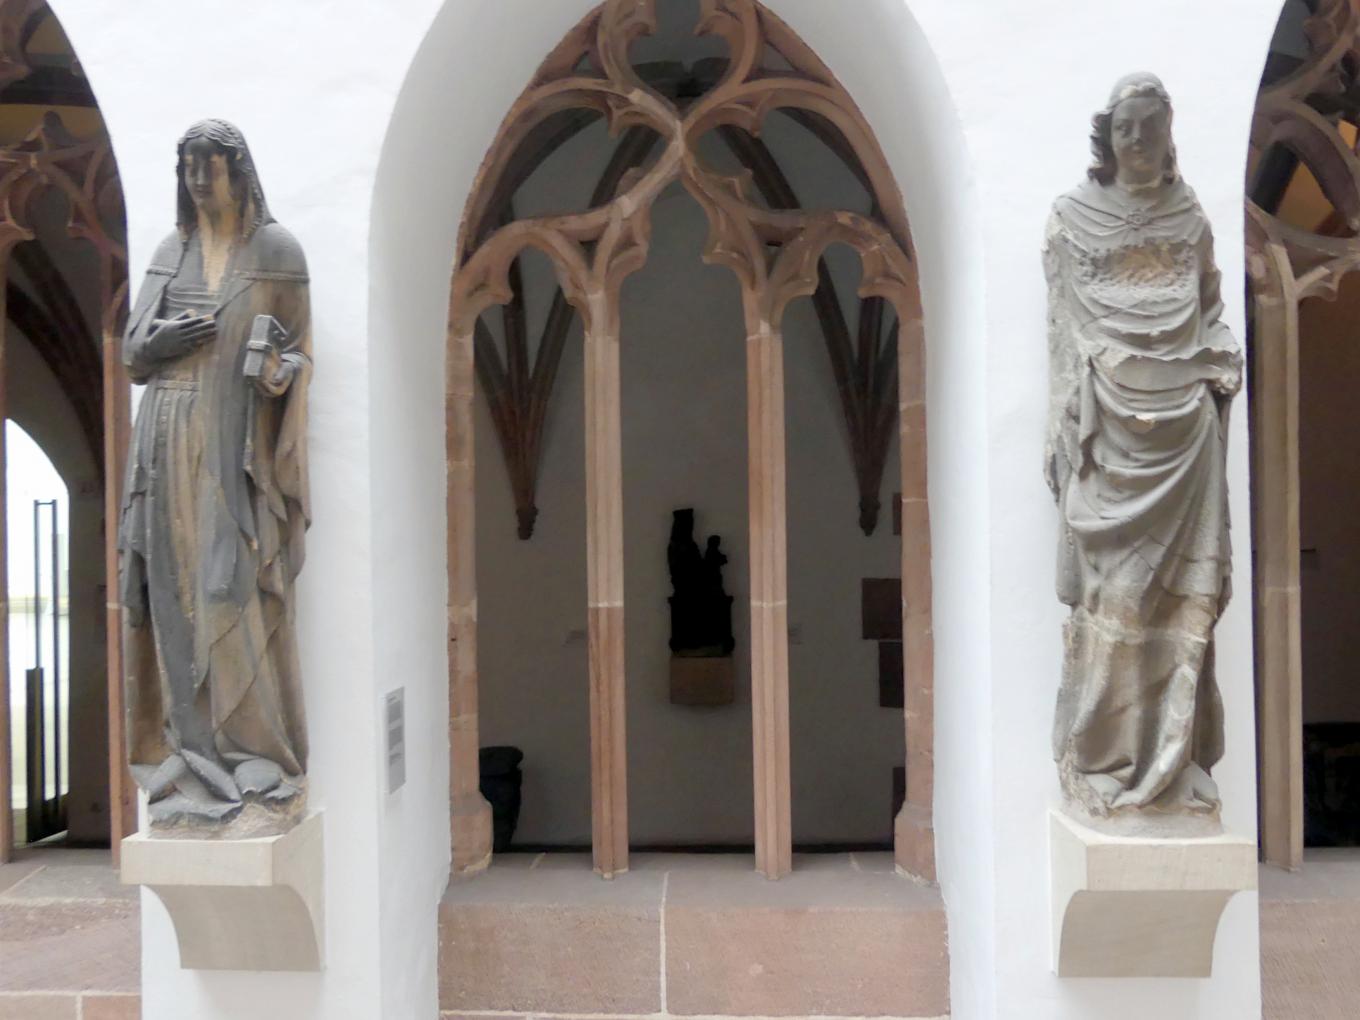 Verkündigung an Maria, Nürnberg, Stadtpfarrkirche Zu Unserer lieben Frau (Frauenkirche), jetzt Nürnberg, Germanisches Nationalmuseum, Saal 31, um 1360